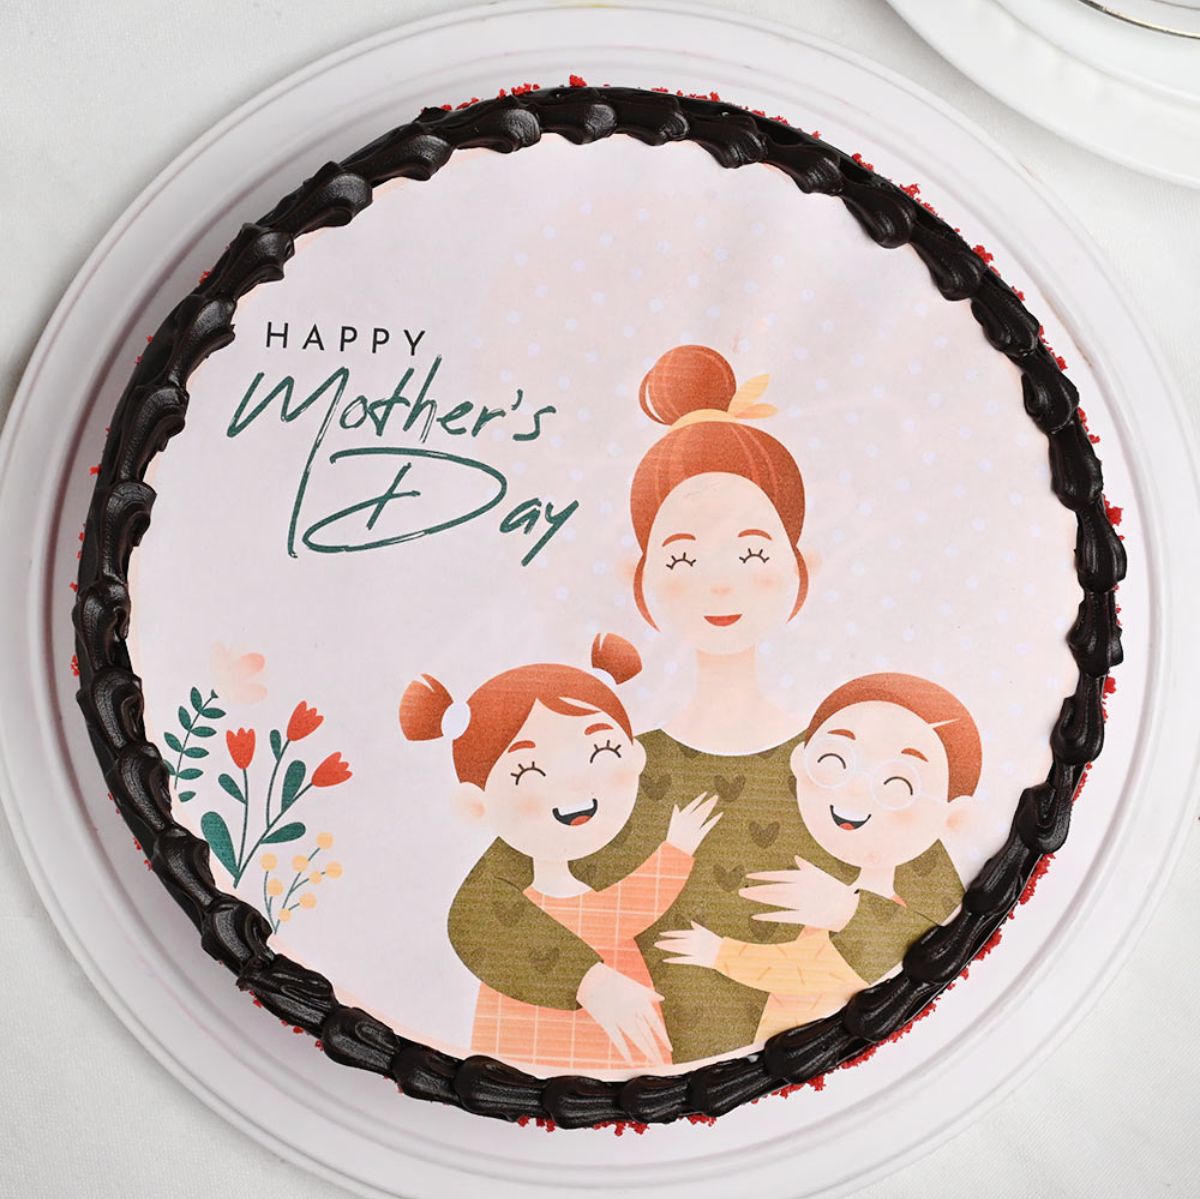 Happy Mother's Day Photo Cream cake